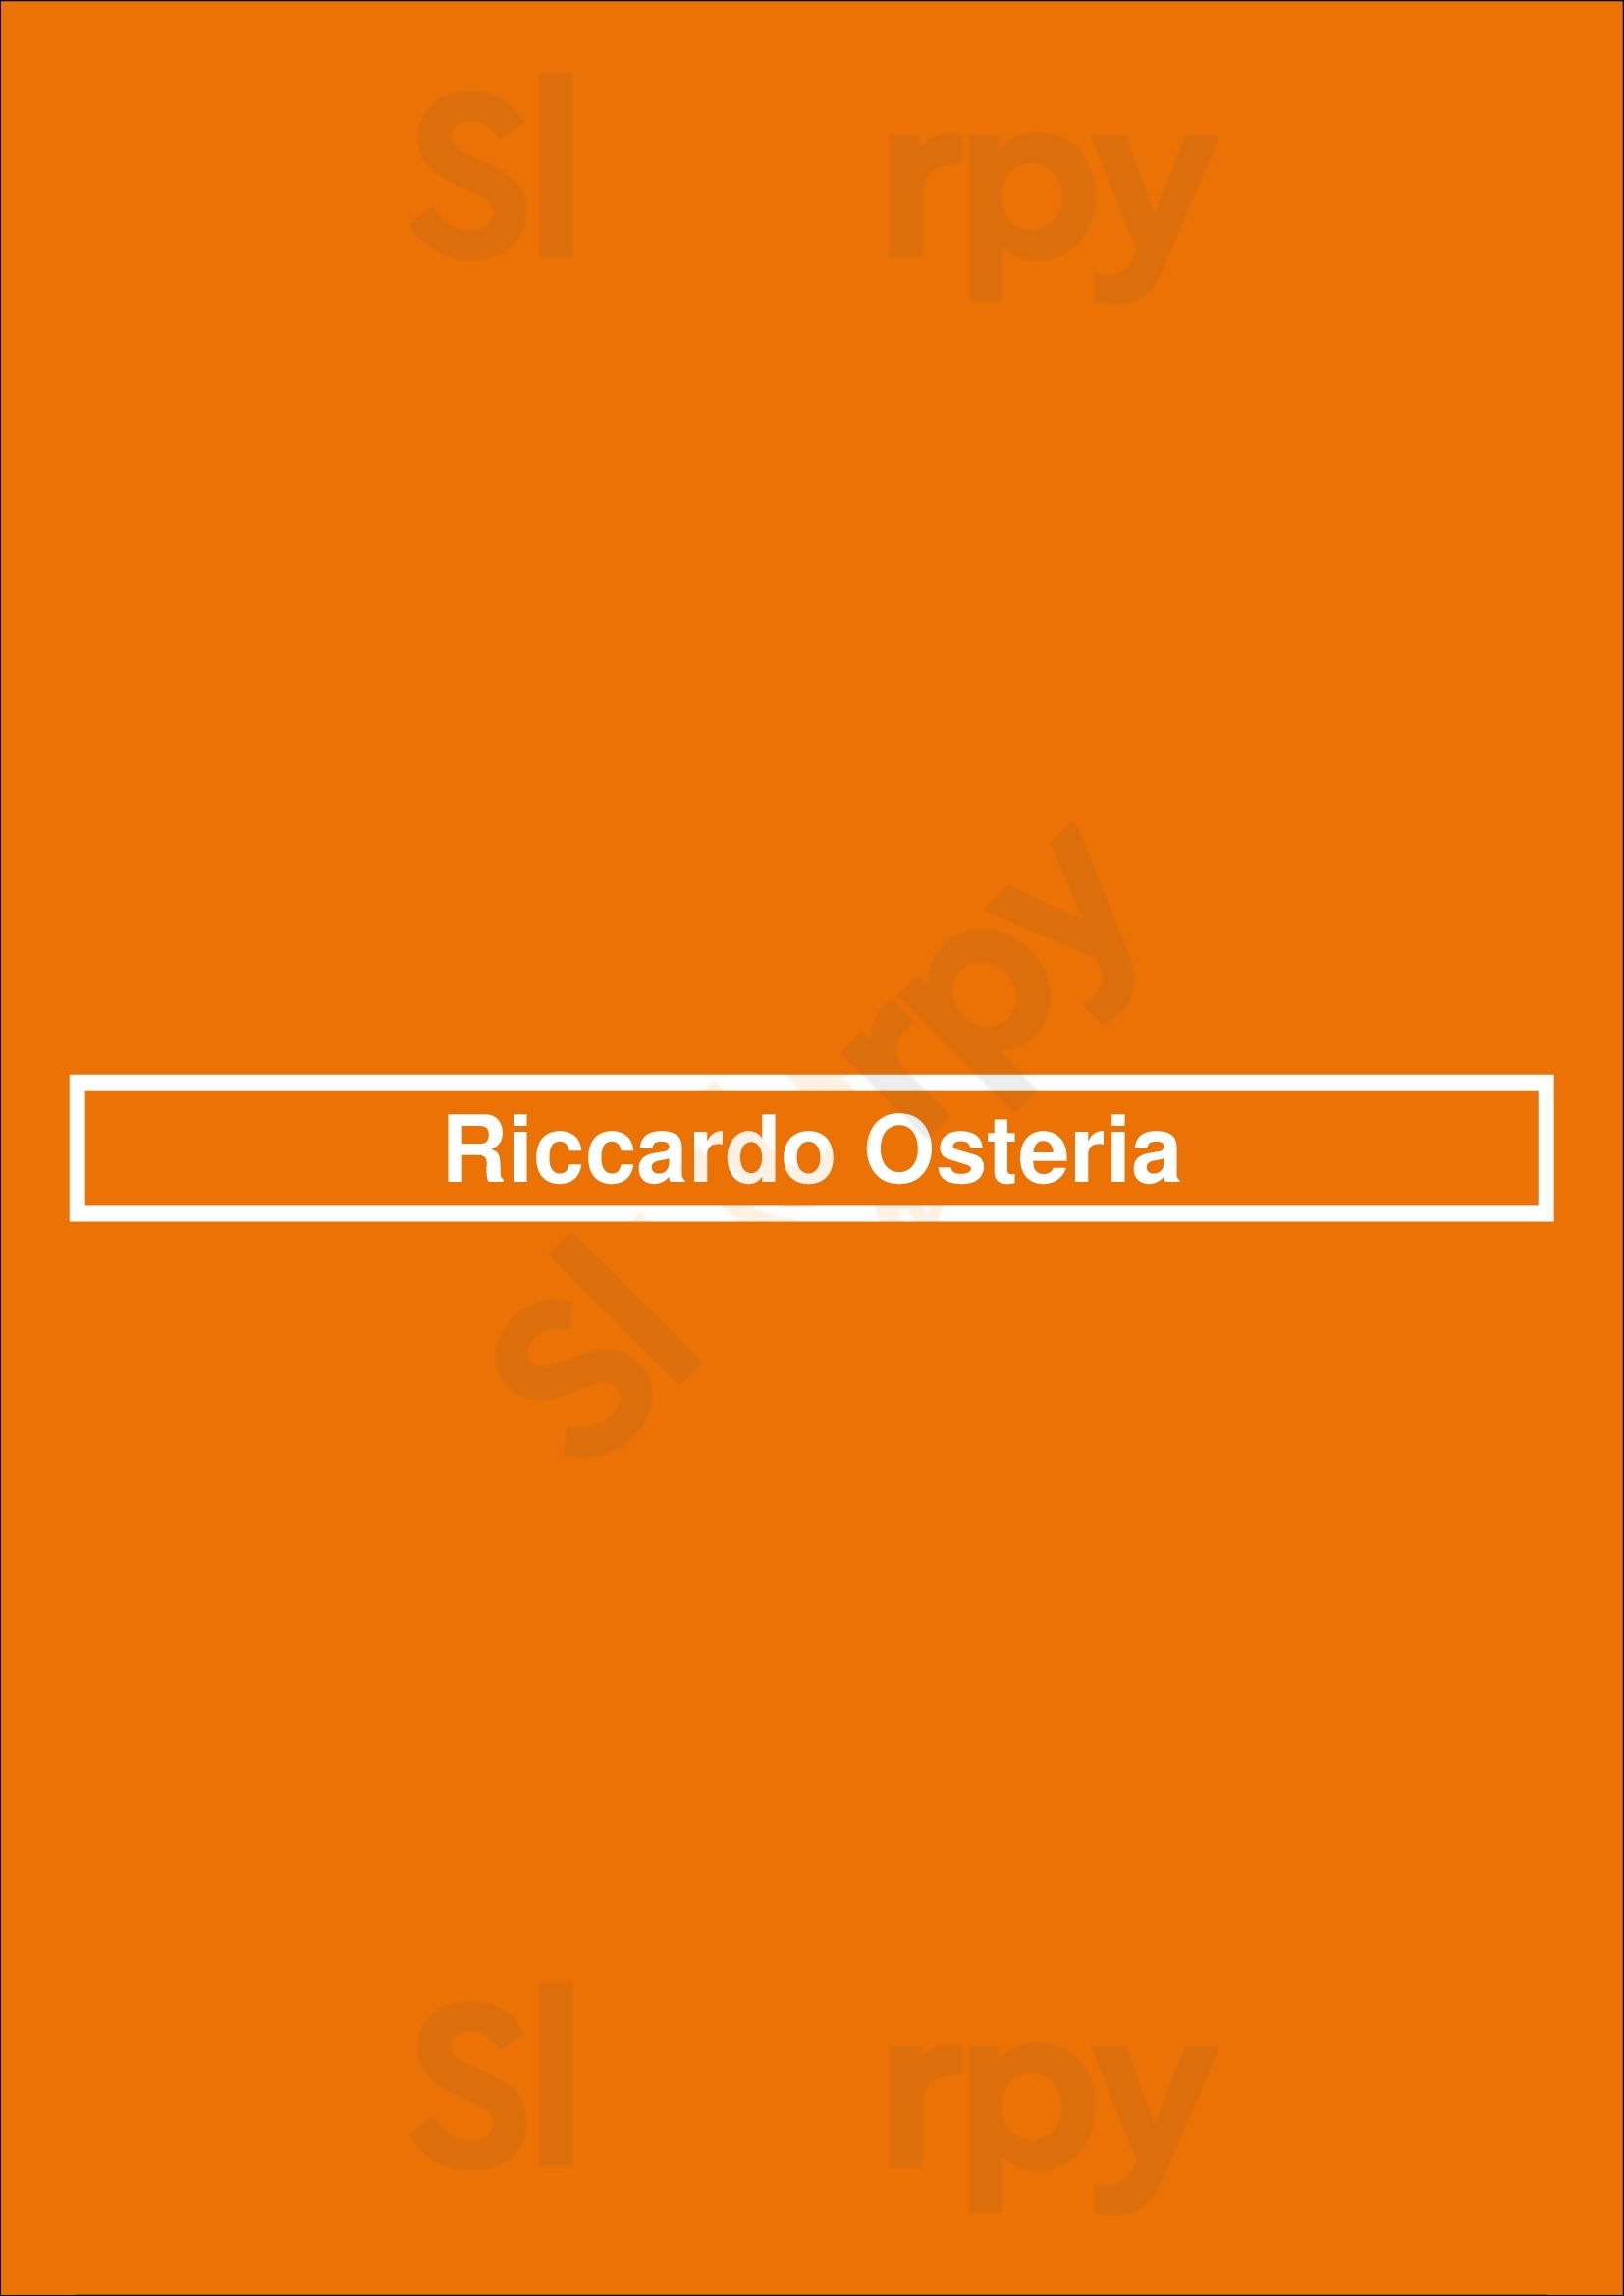 Riccardo Osteria Chicago Menu - 1